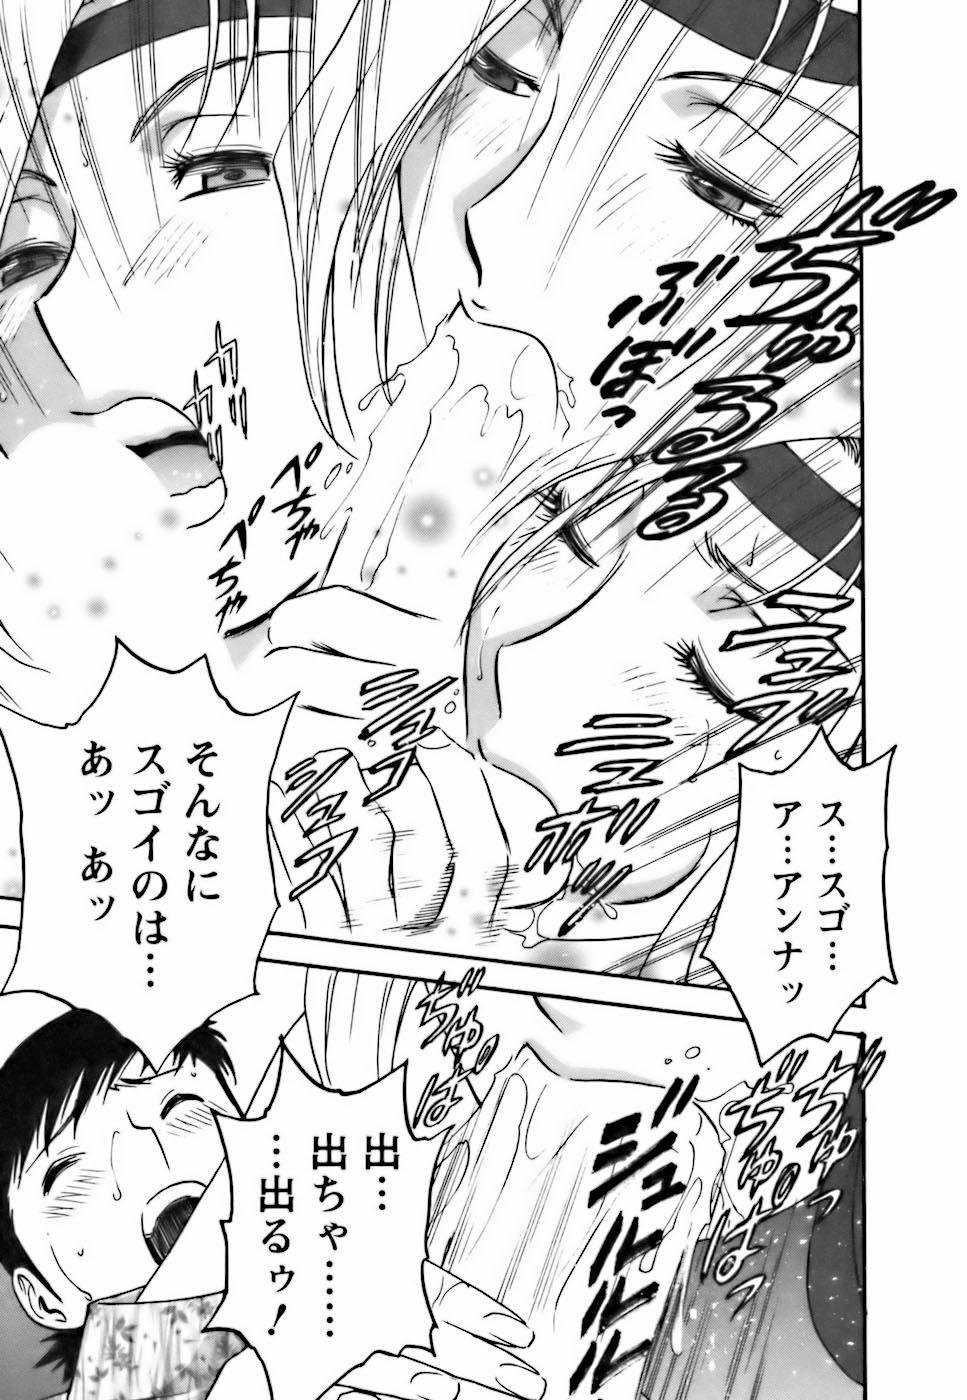 [Hidemaru] Mo-Retsu! Boin Sensei (Boing Boing Teacher) Vol.3 74